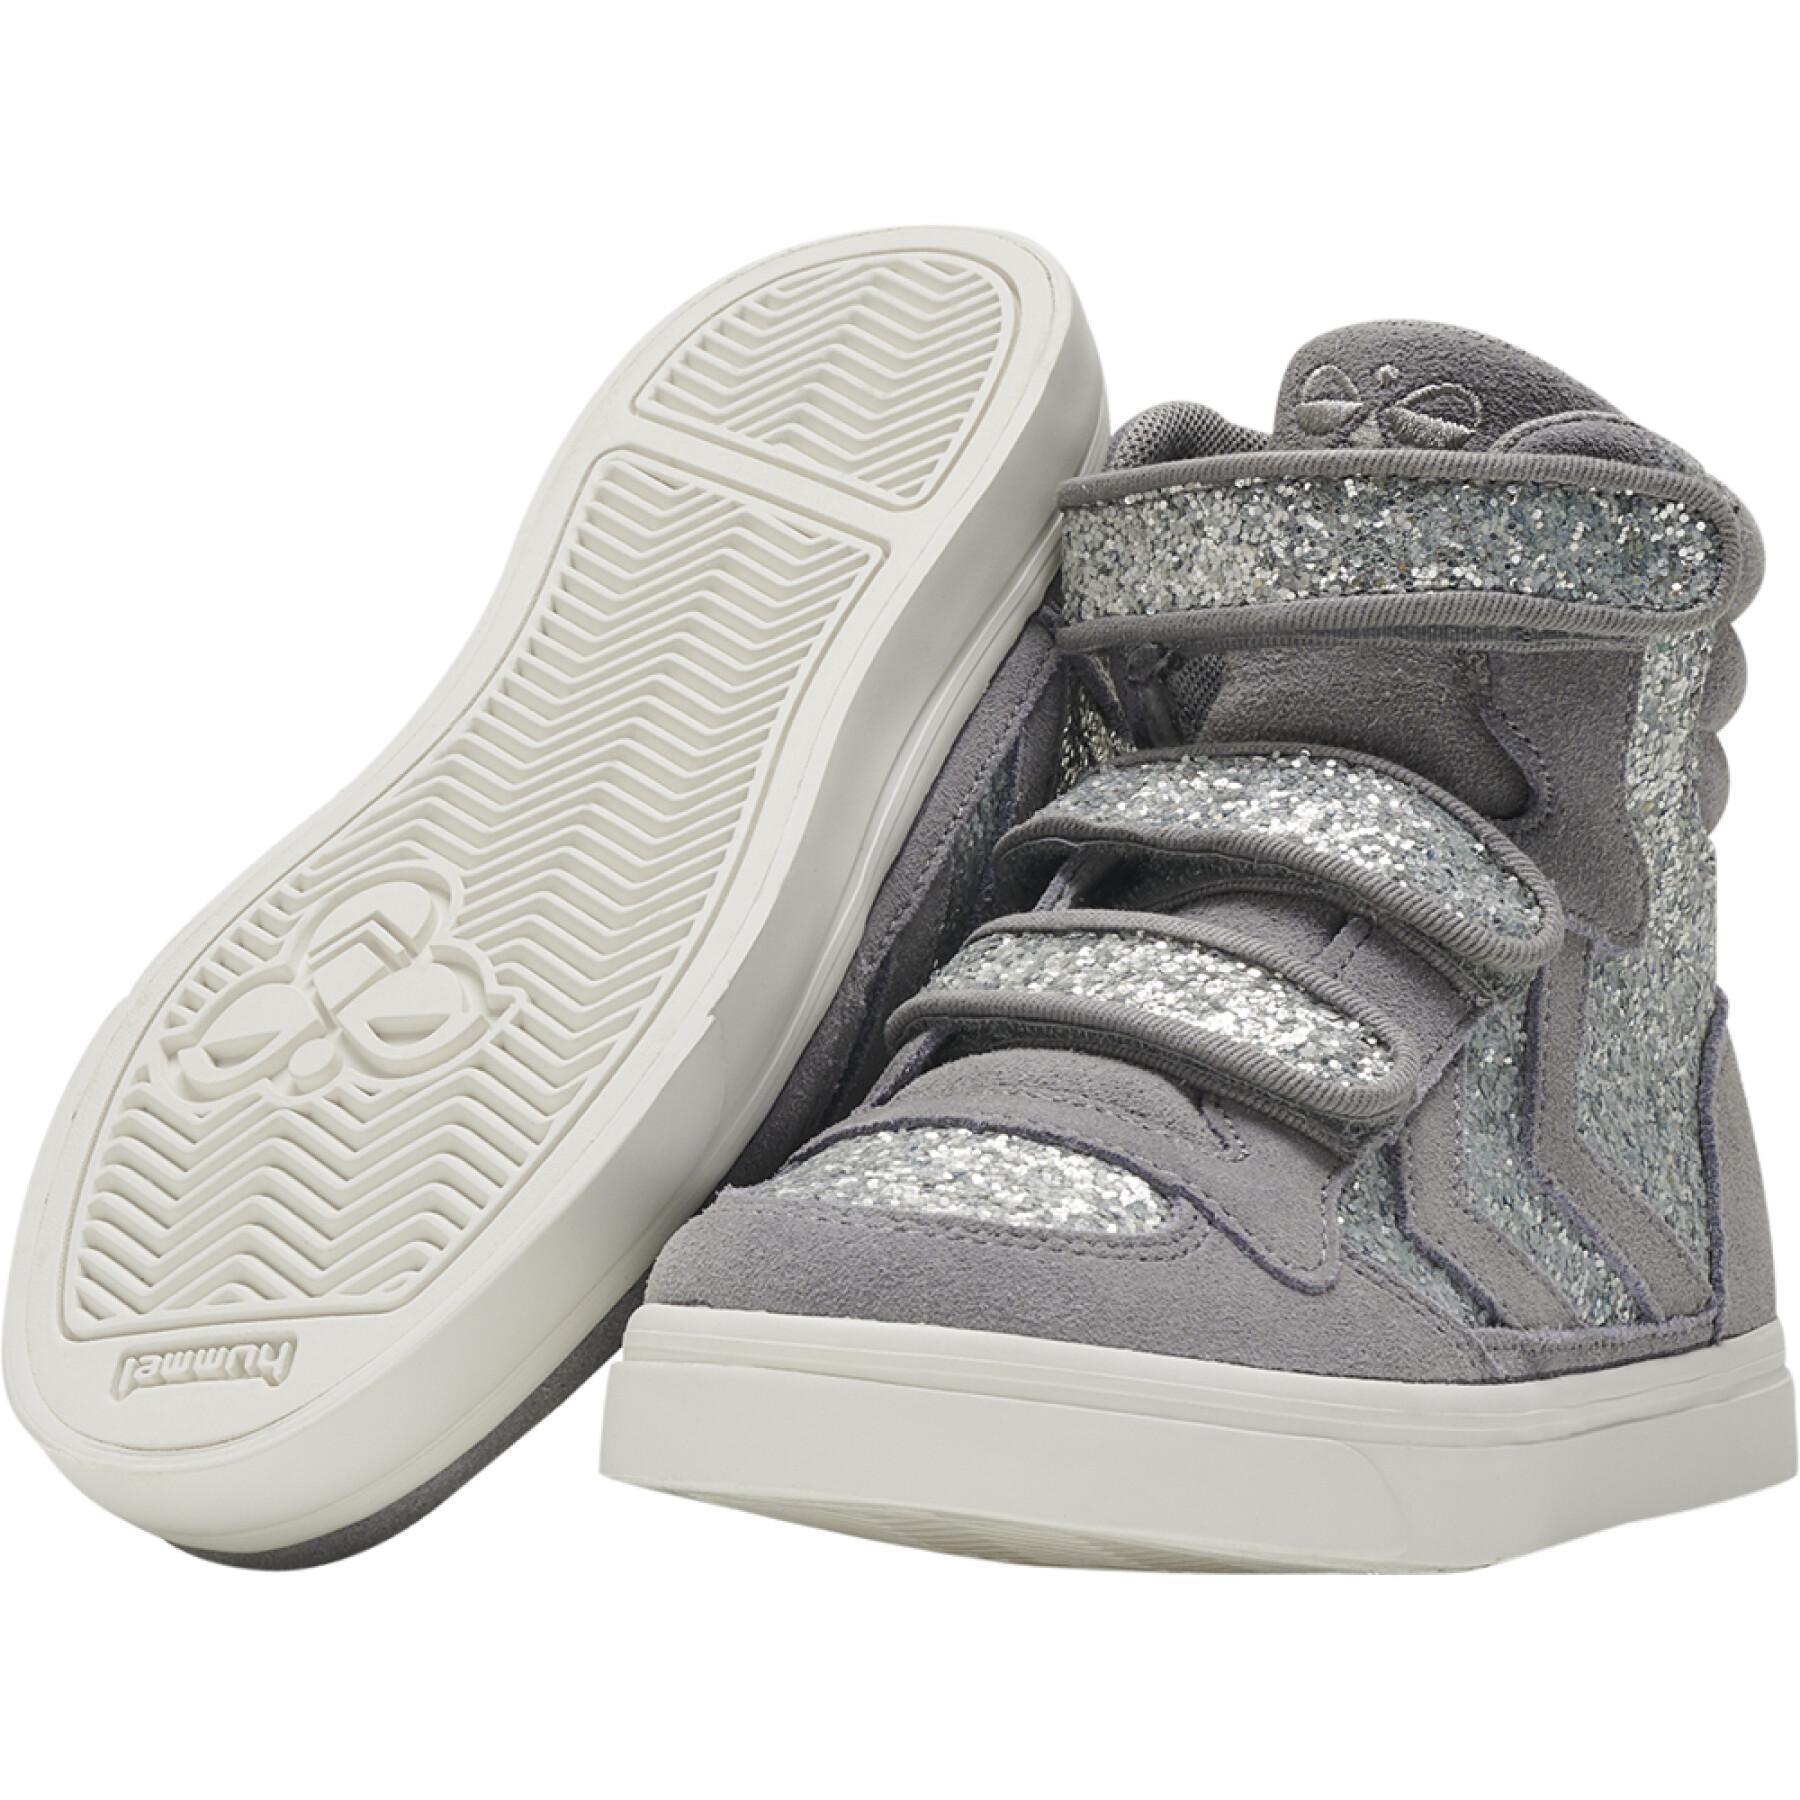 Children's sneakers Hummel Stadil Glitter